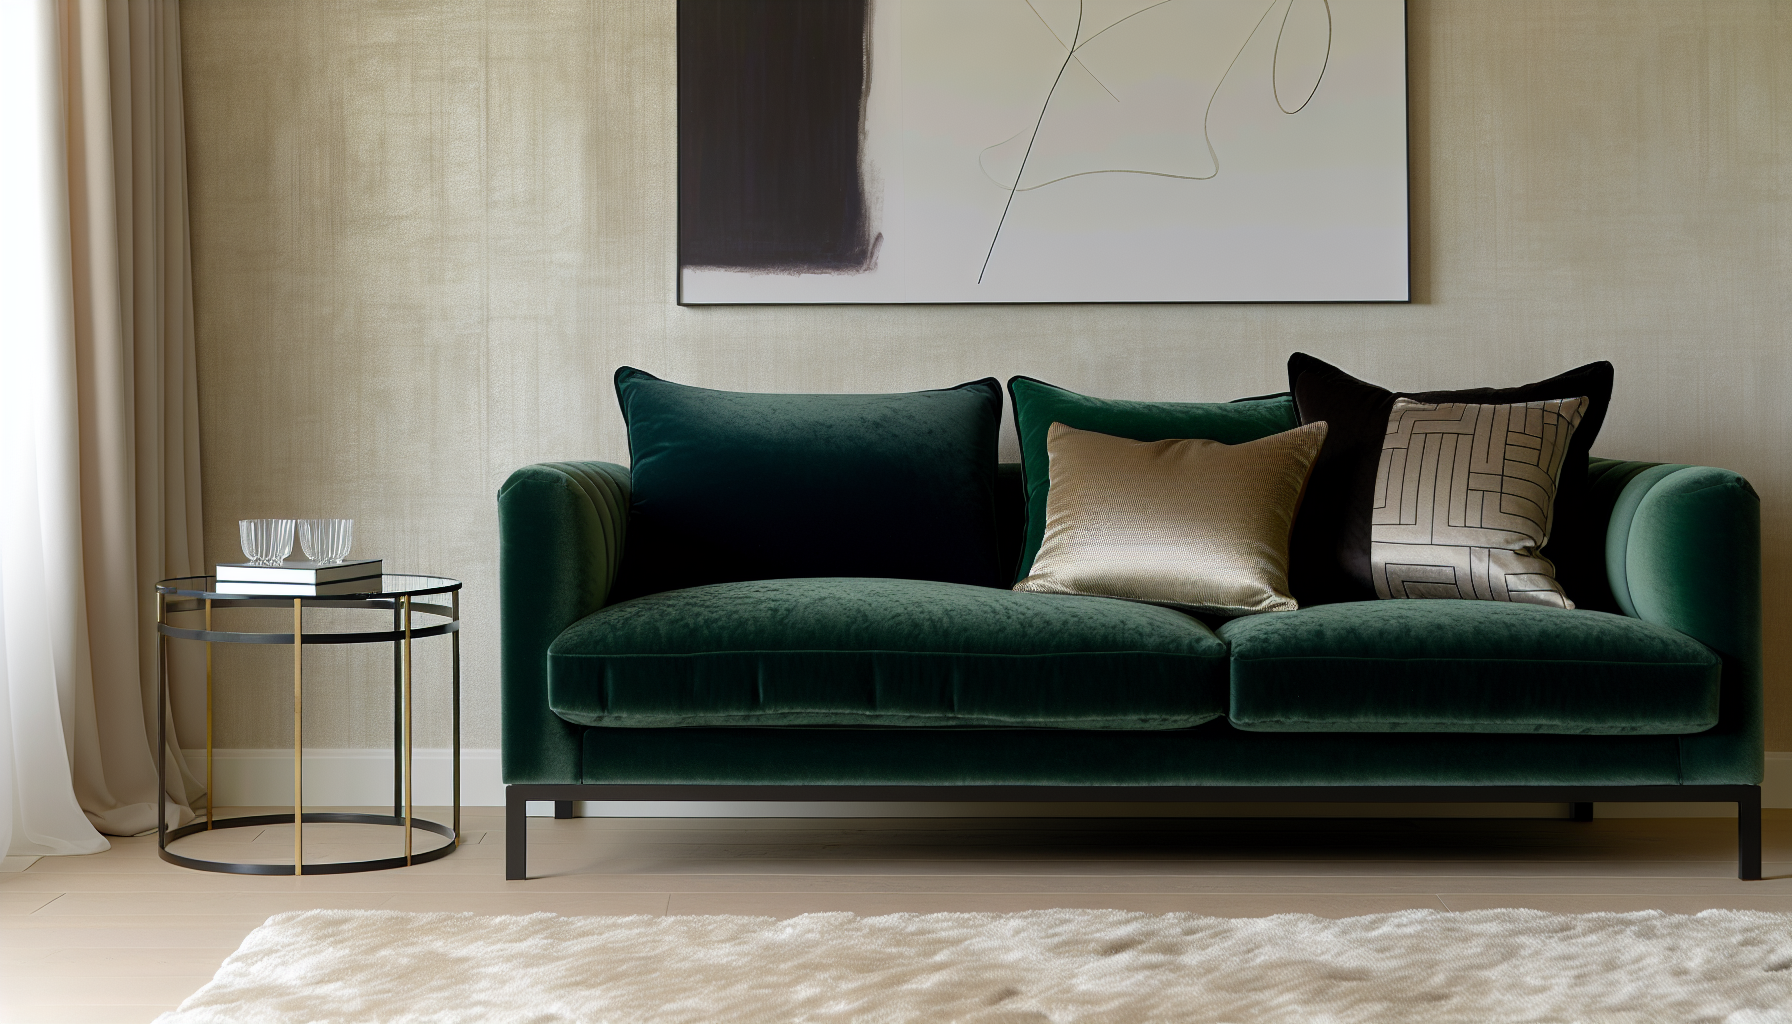 Luxurious velvet upholstery in a living room